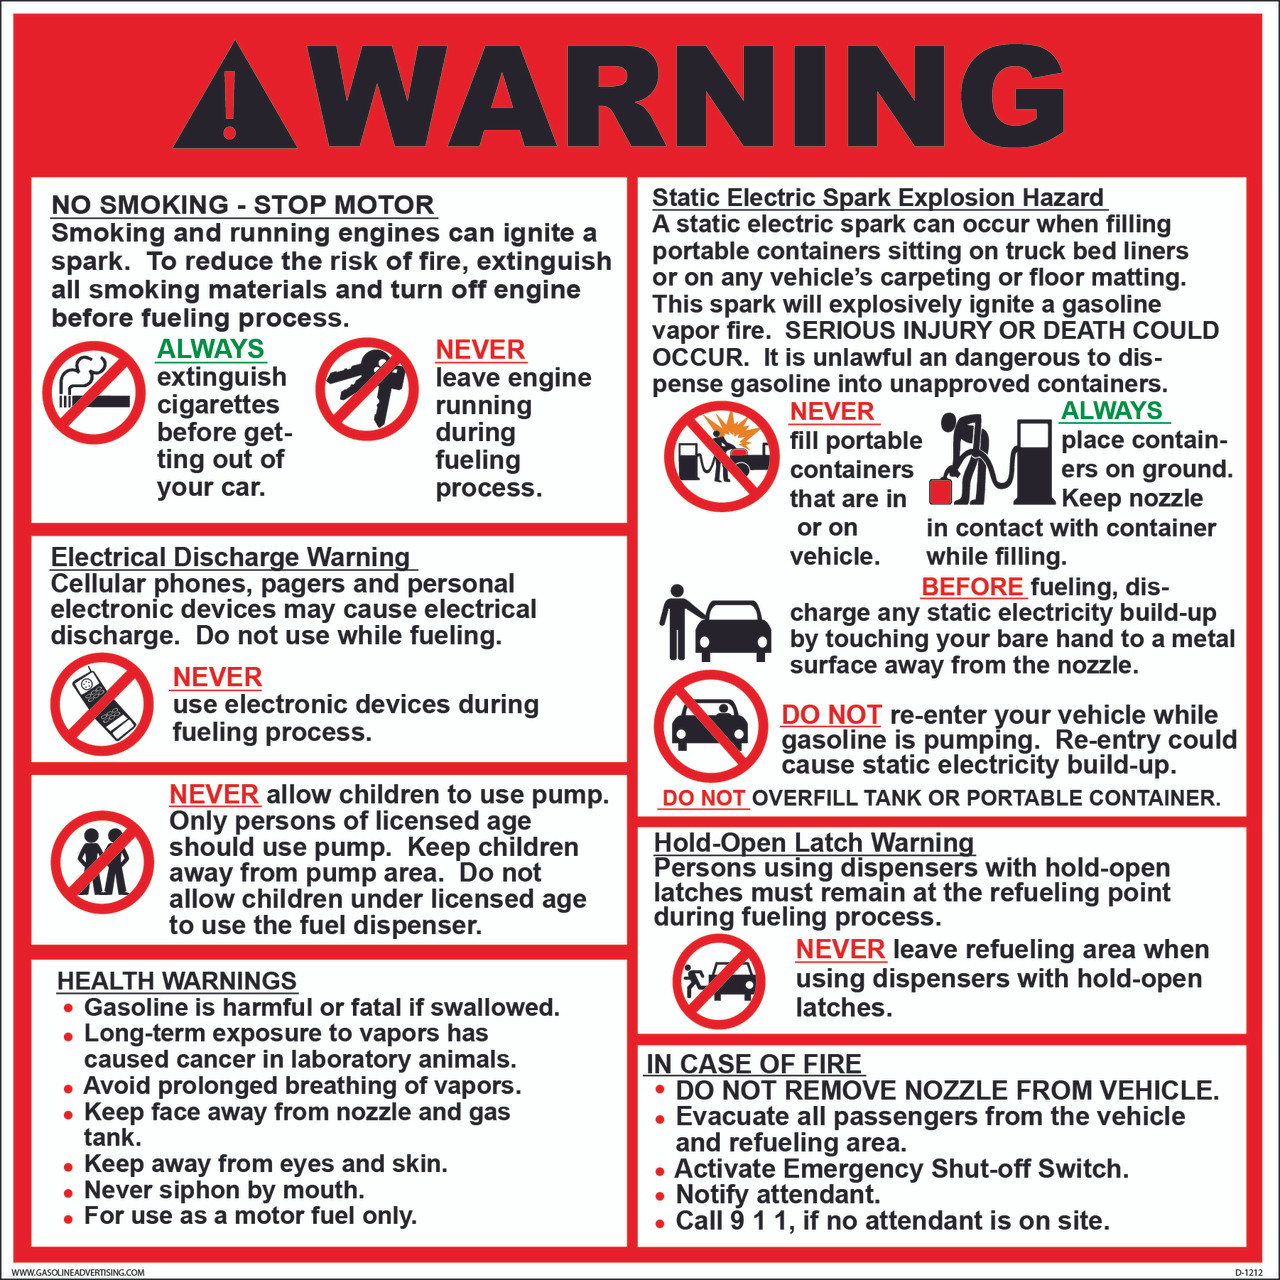 Cire Fondre de sécurité Warning Labels/Stickers/instructions/Law requirements 